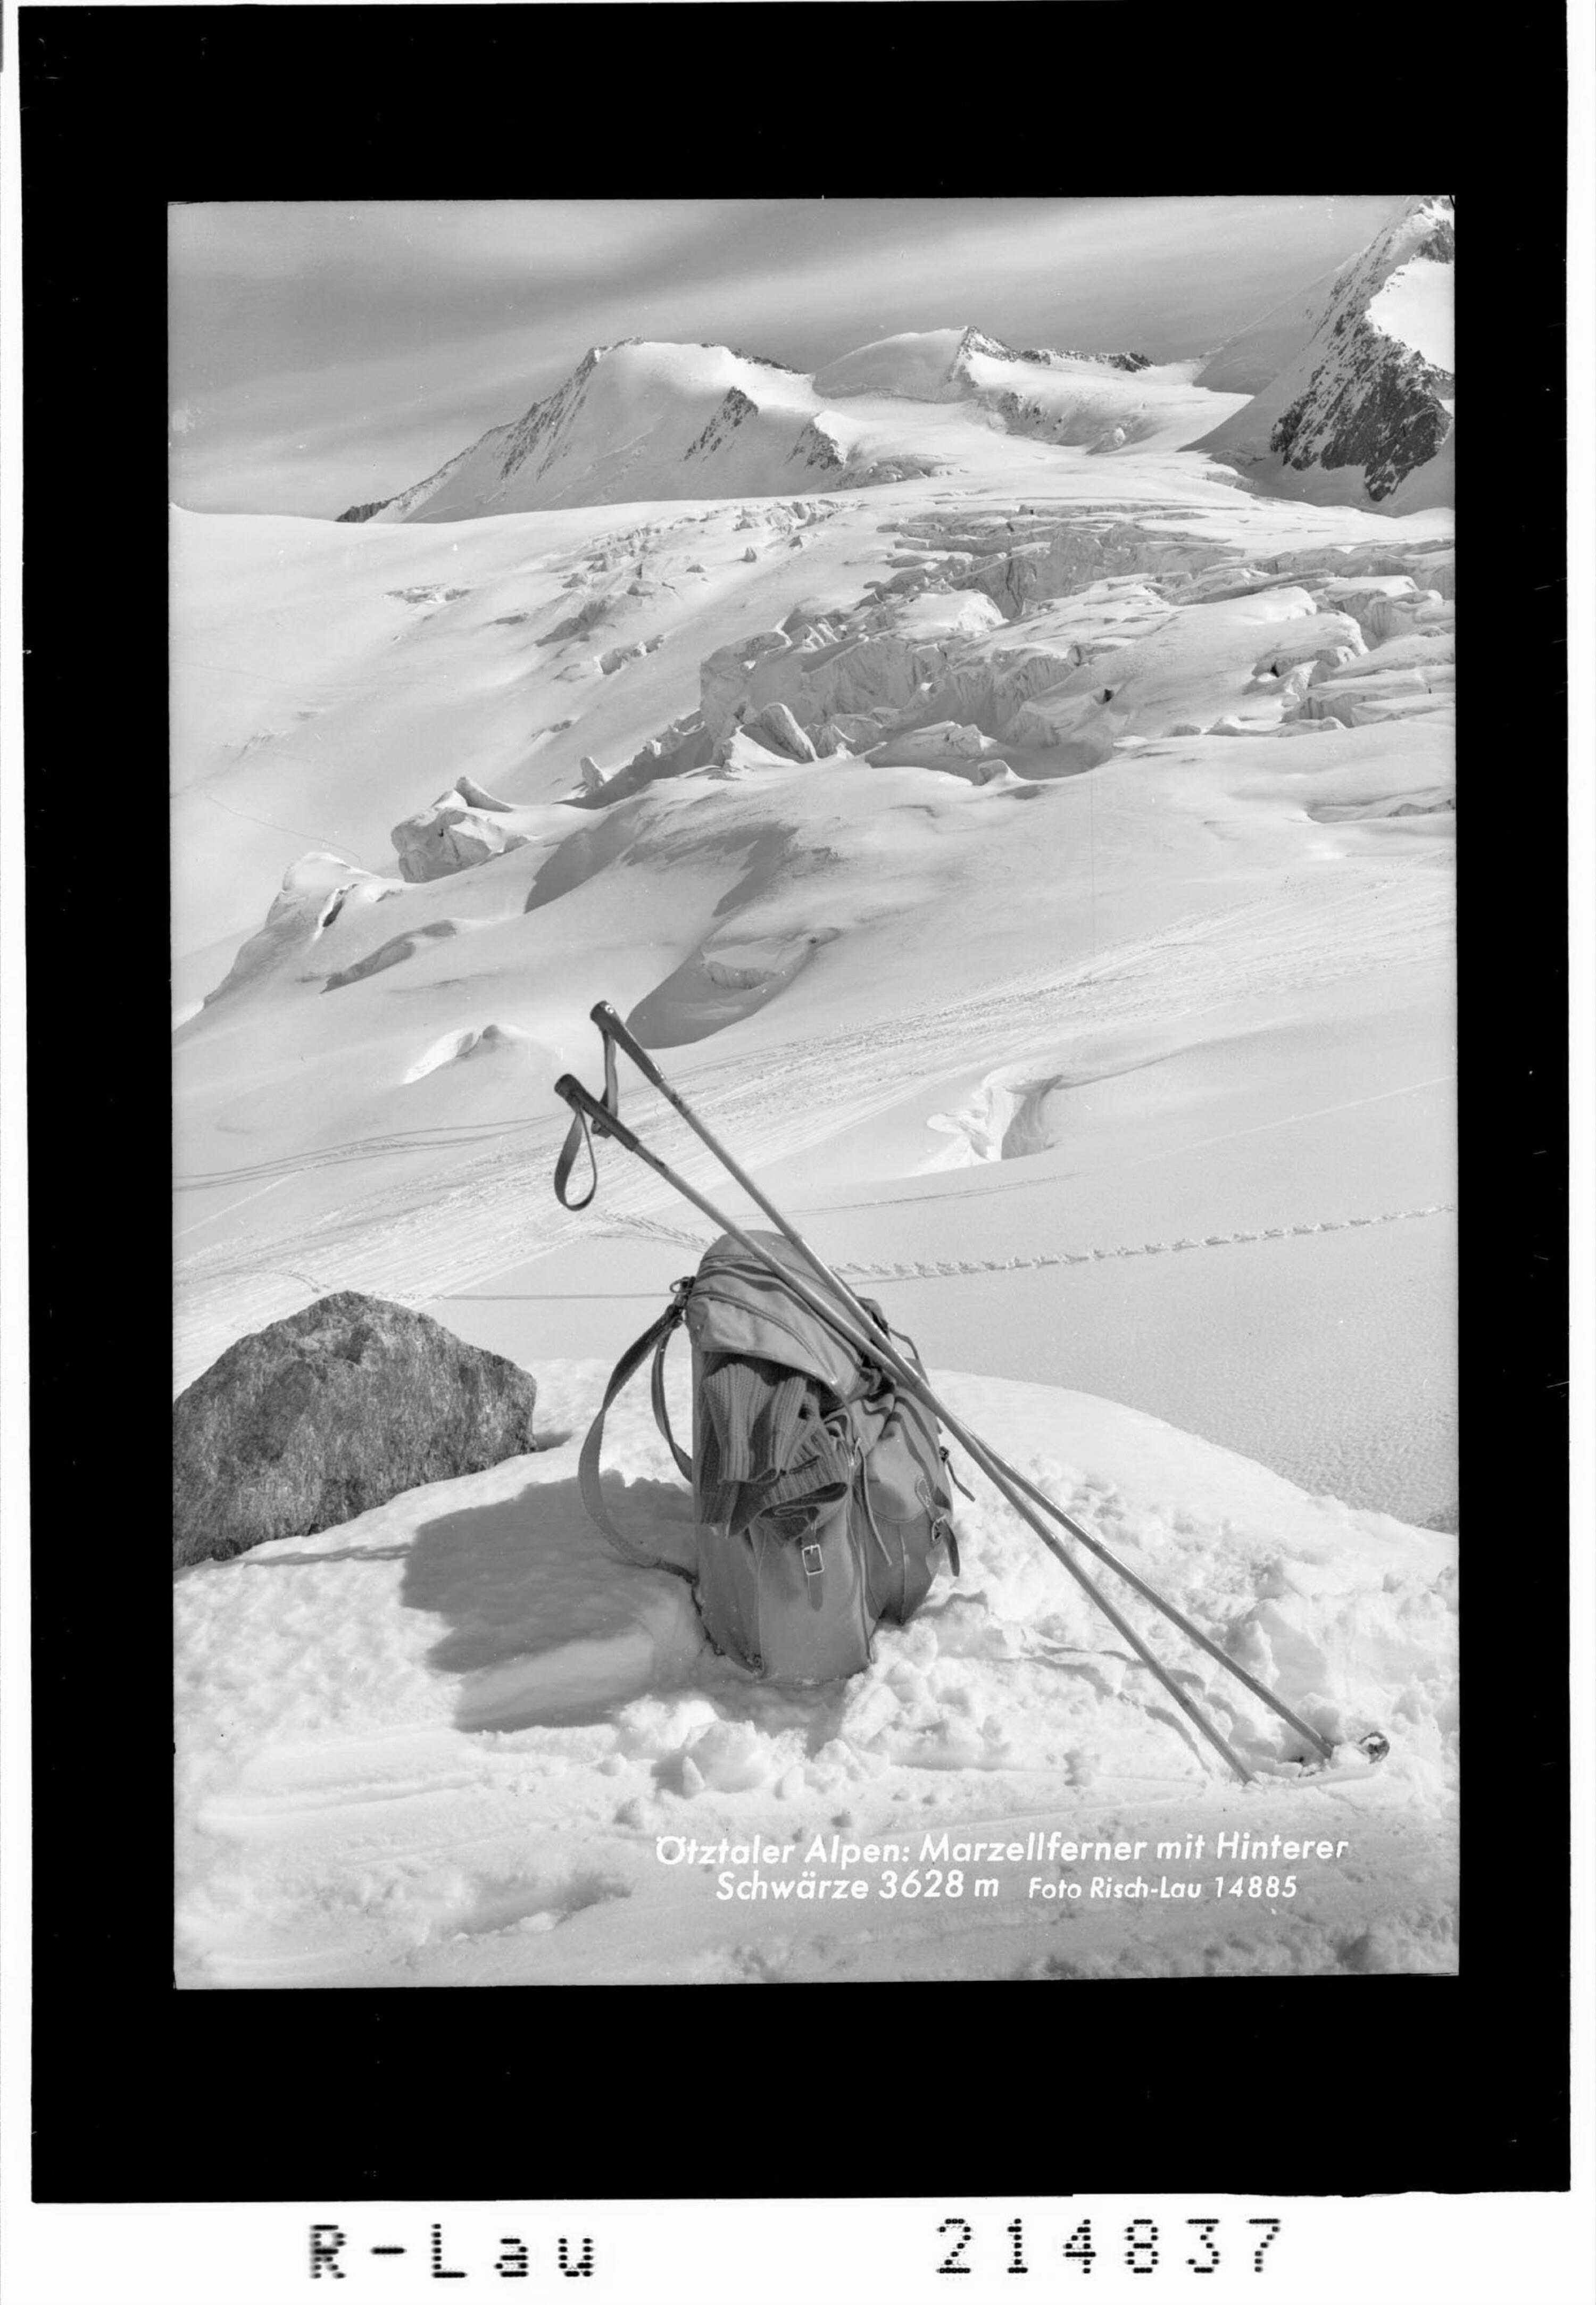 Ötztaler Alpen : Marzellferner mit Hinterer Schwärze 3628 m></div>


    <hr>
    <div class=